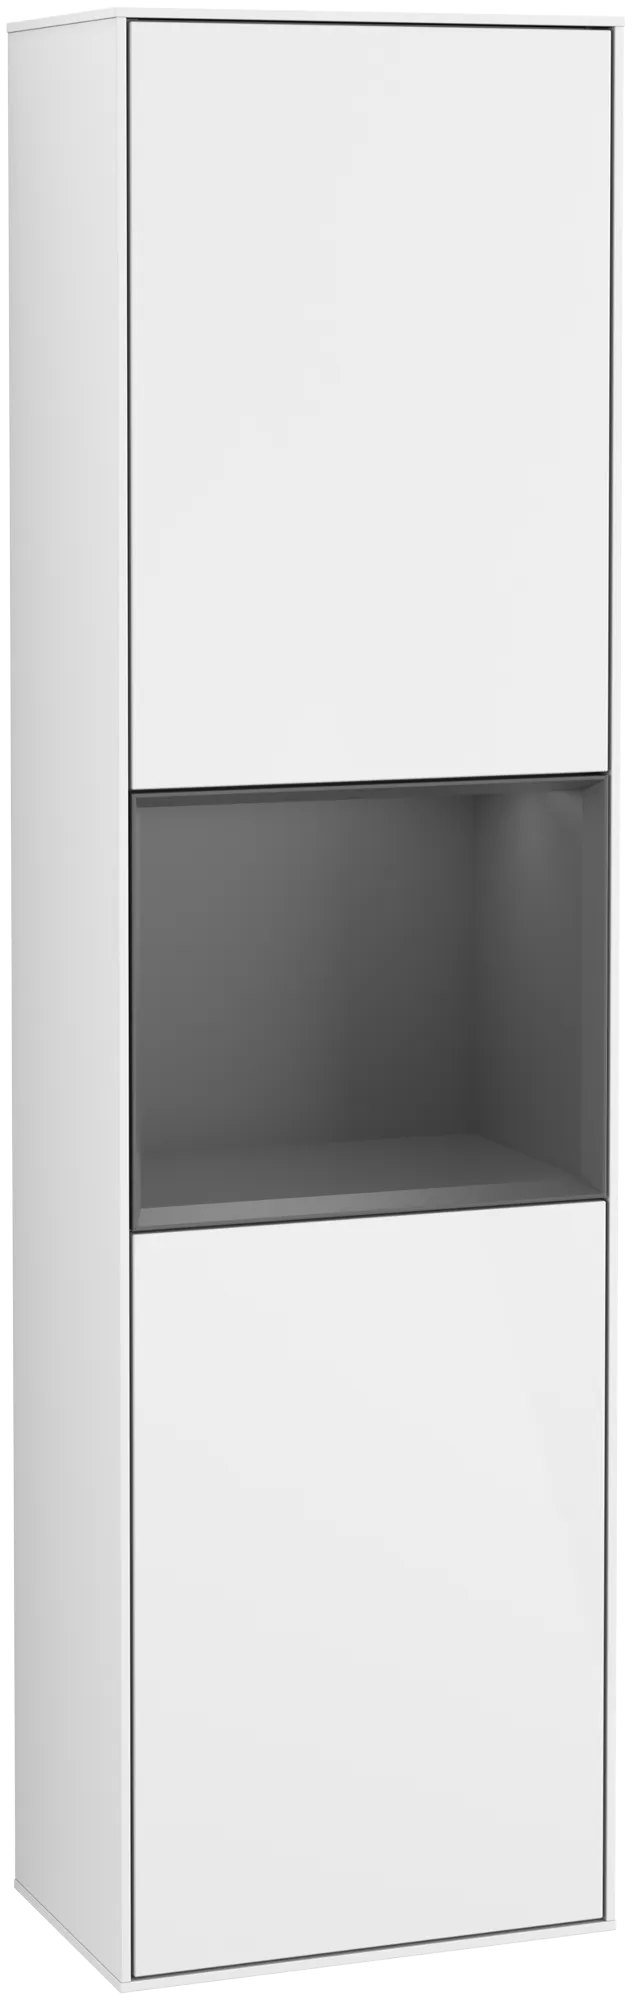 Bild von VILLEROY BOCH Finion Hochschrank, mit Beleuchtung, 2 Türen, 418 x 1516 x 270 mm, Glossy White Lacquer / Anthracite Matt Lacquer #G460GKGF